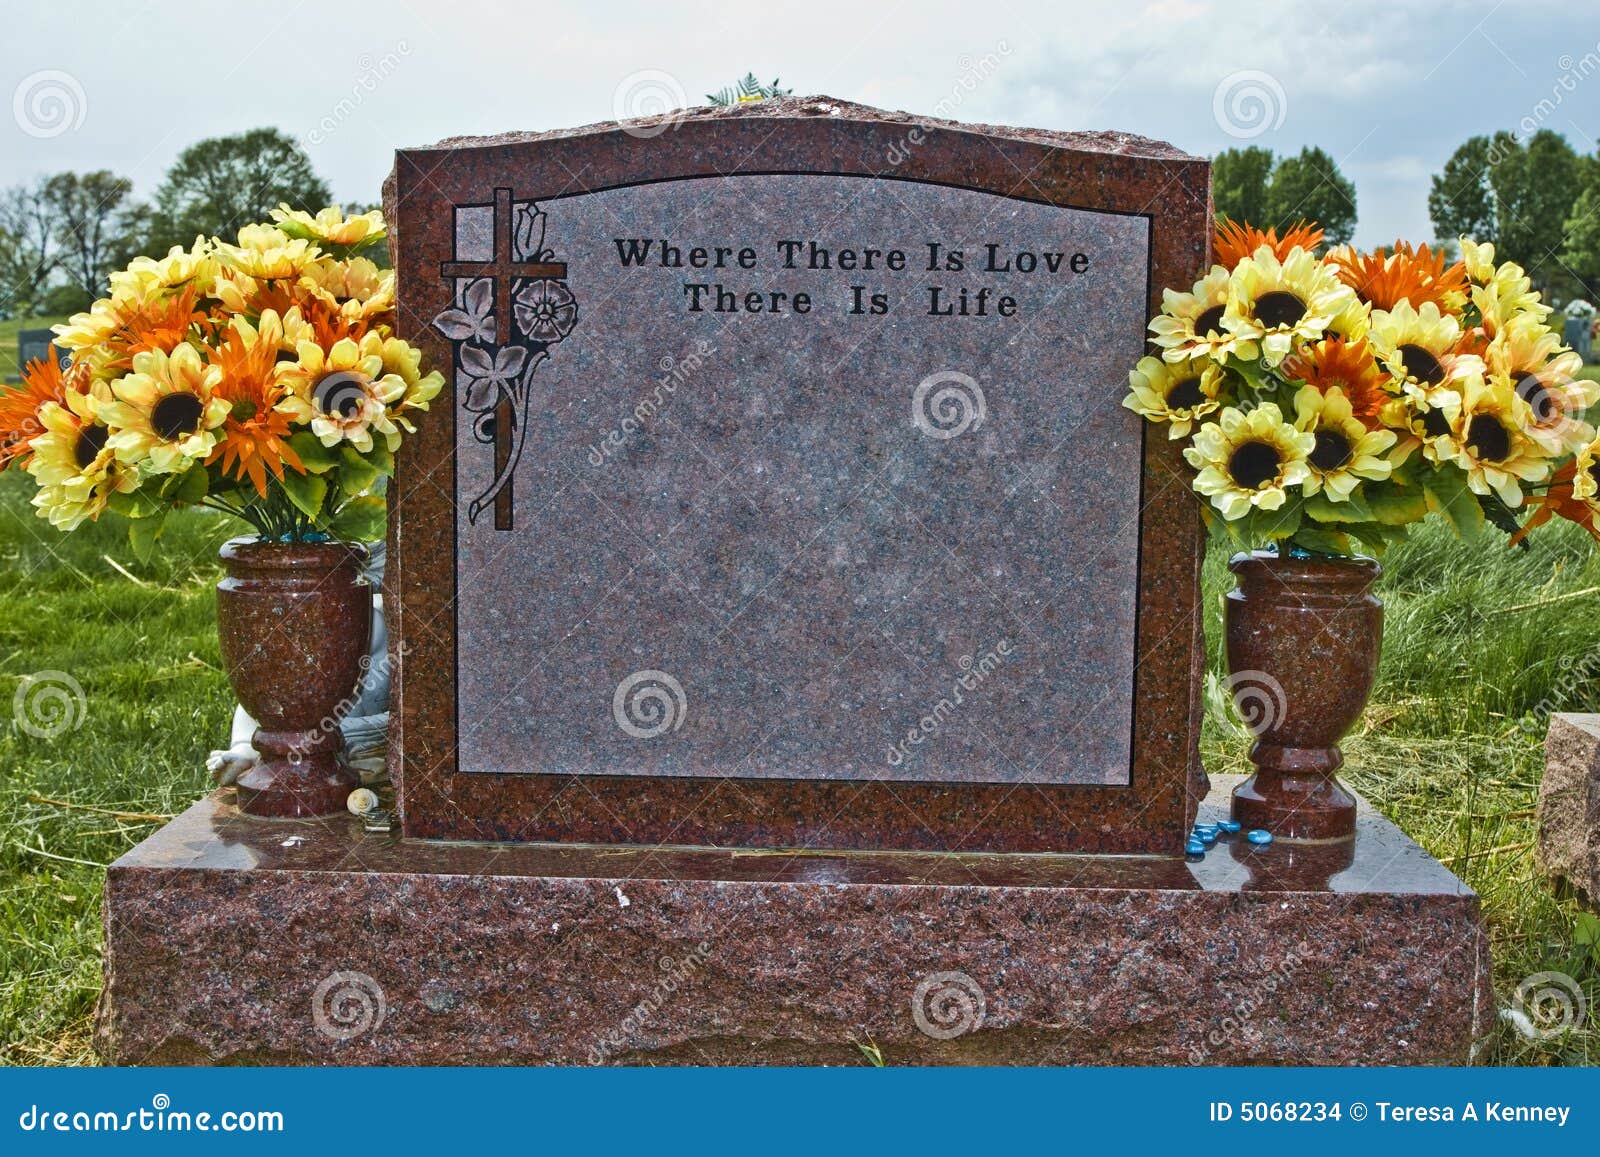 Pierre commémorative faite de granit rouge. L'inscription s'affiche : Là où il y a amour il y a durée. Fleurs de source/été dans les vases. L'ornement dans le coin gauche supérieur est une croix avec des fleurs.